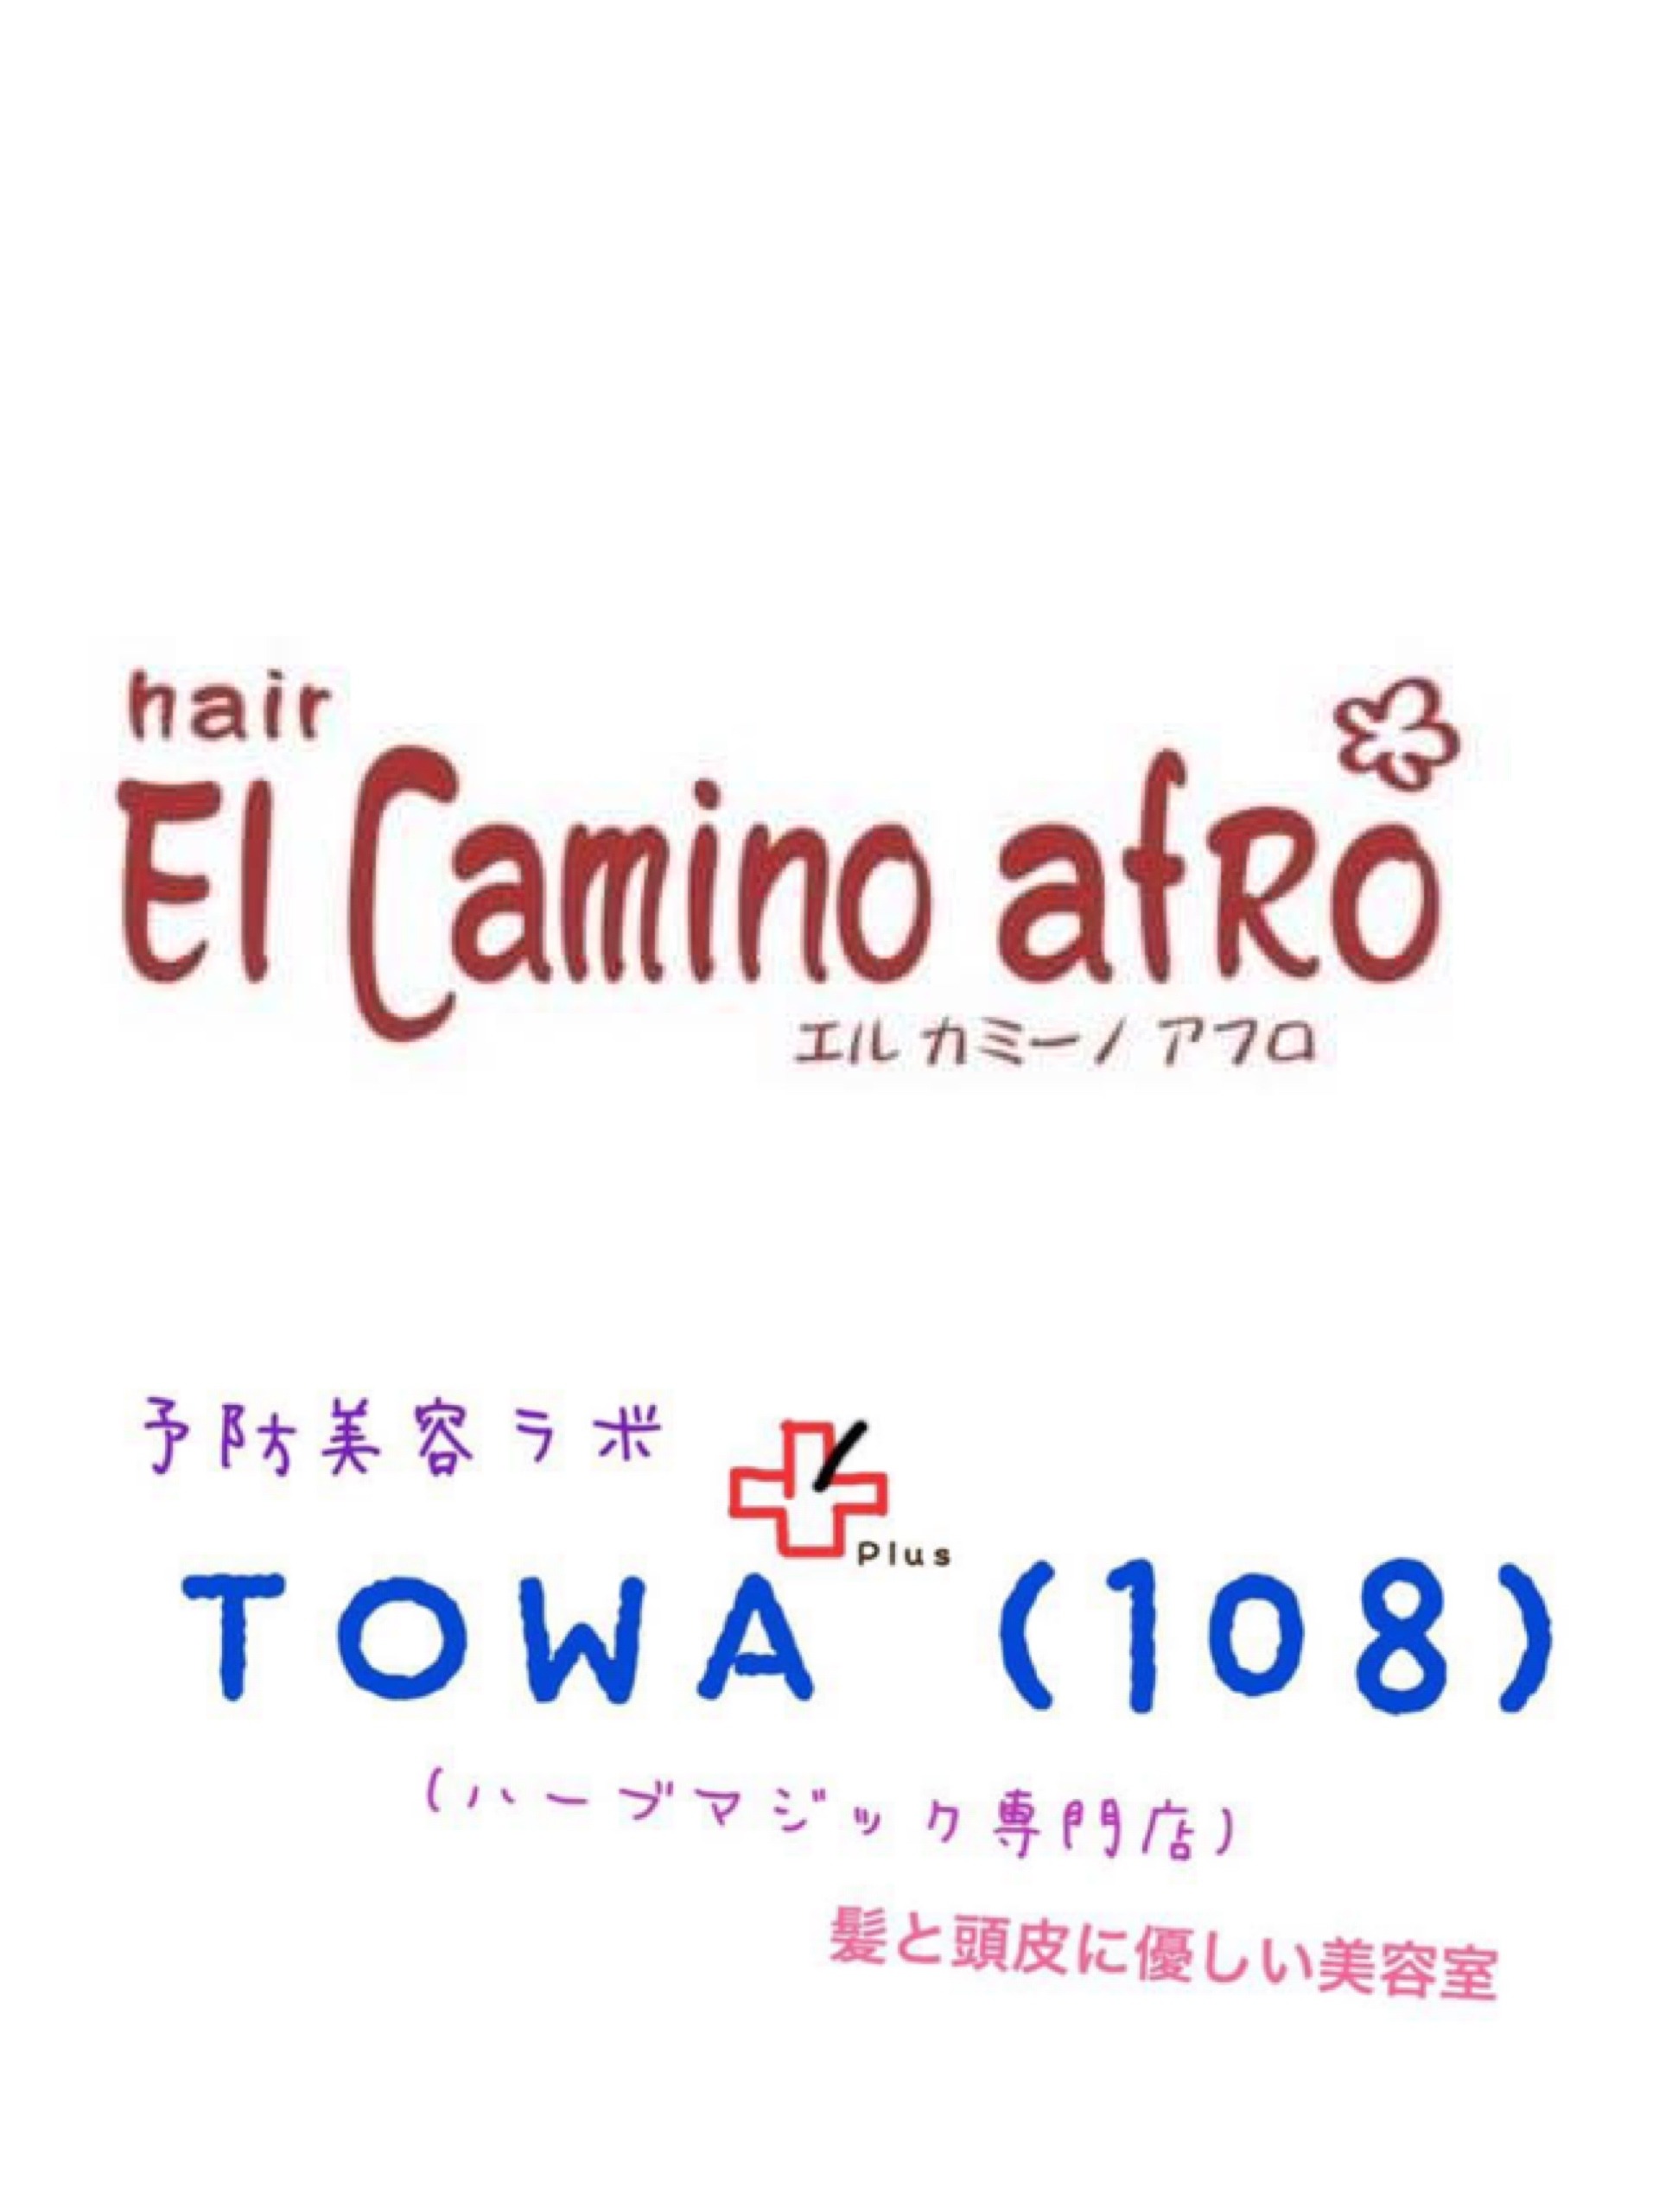 elcaminoafro&TOWA